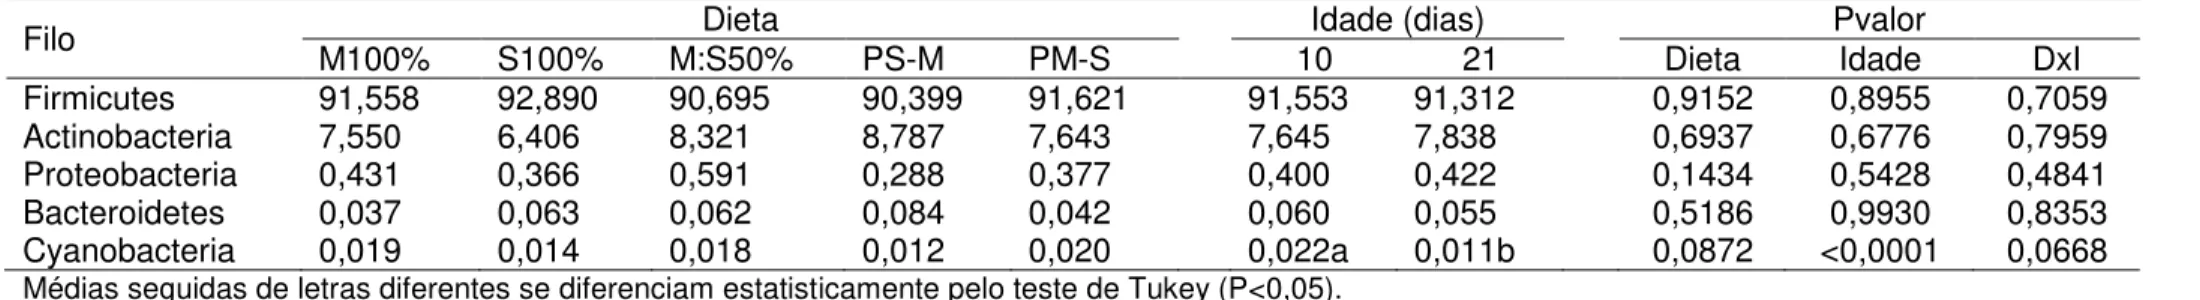 Tabela  8  -  Porcentagem  dos  principais  filos  de  bactérias  do  intestino  delgado  de  frangos  de  corte  alimentados  com  diferentes  dietas, aos 10 e 21 dias de idade (r=4) 